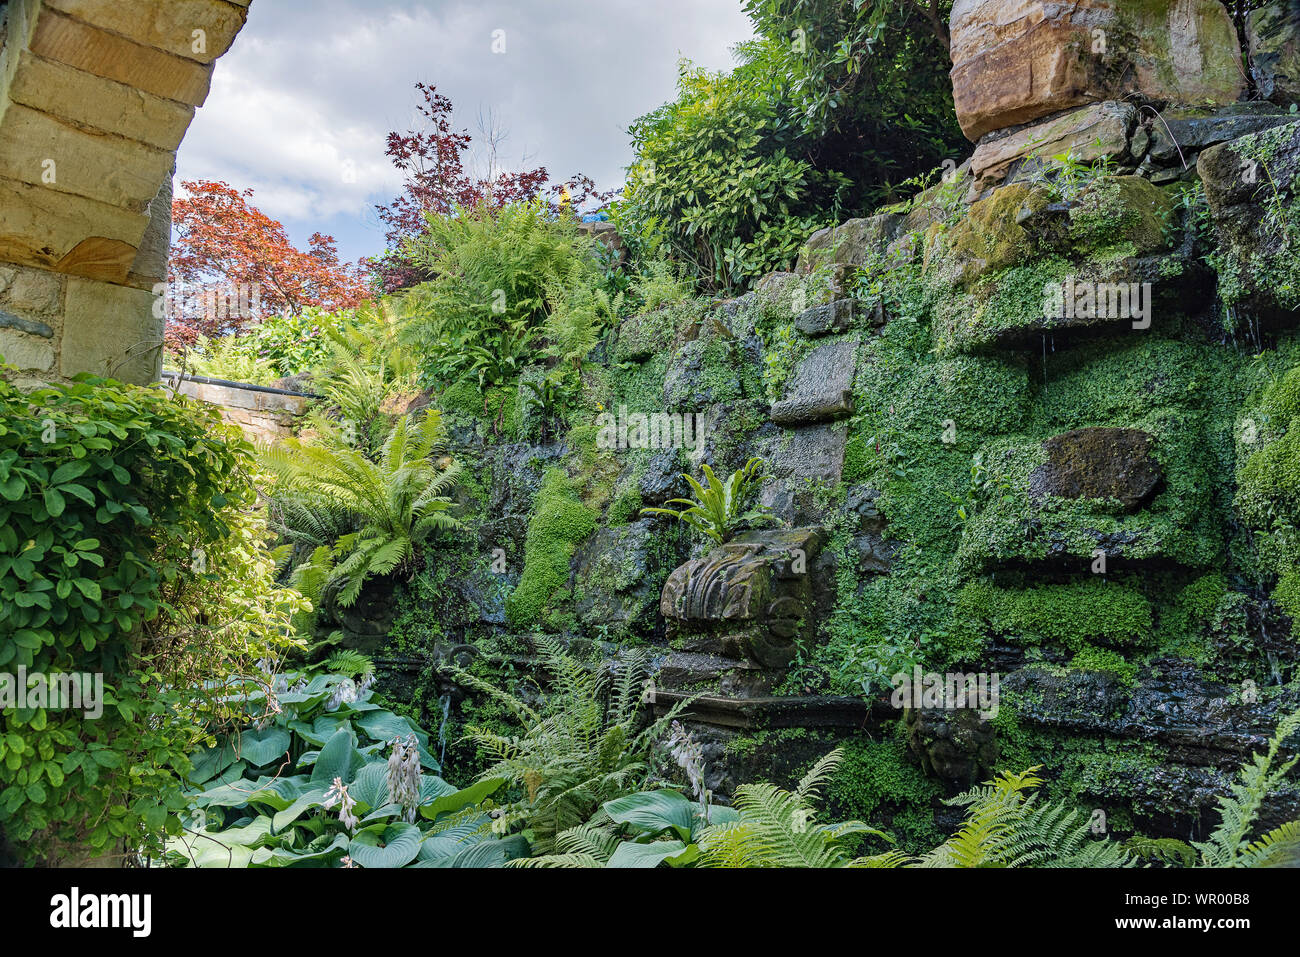 Schattigen Grotten-italienischen Garten, Hever Castle, Großbritannien Stockfoto